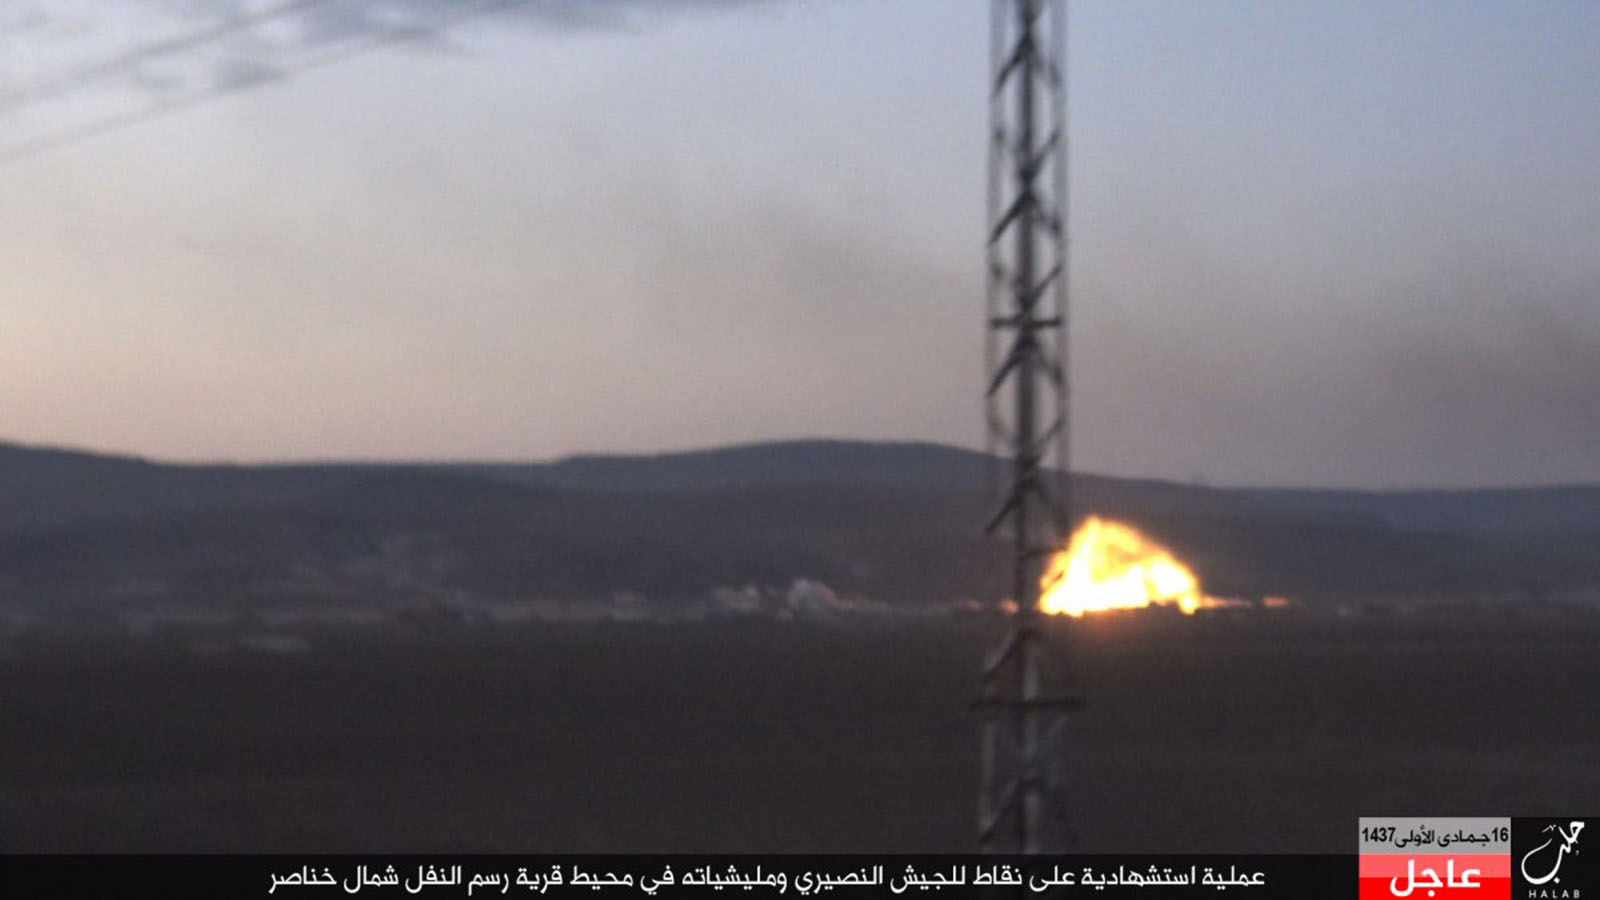 الهجوم على خناصر: هل يتدخل "داعش" لصالح "جند الأقصى"؟